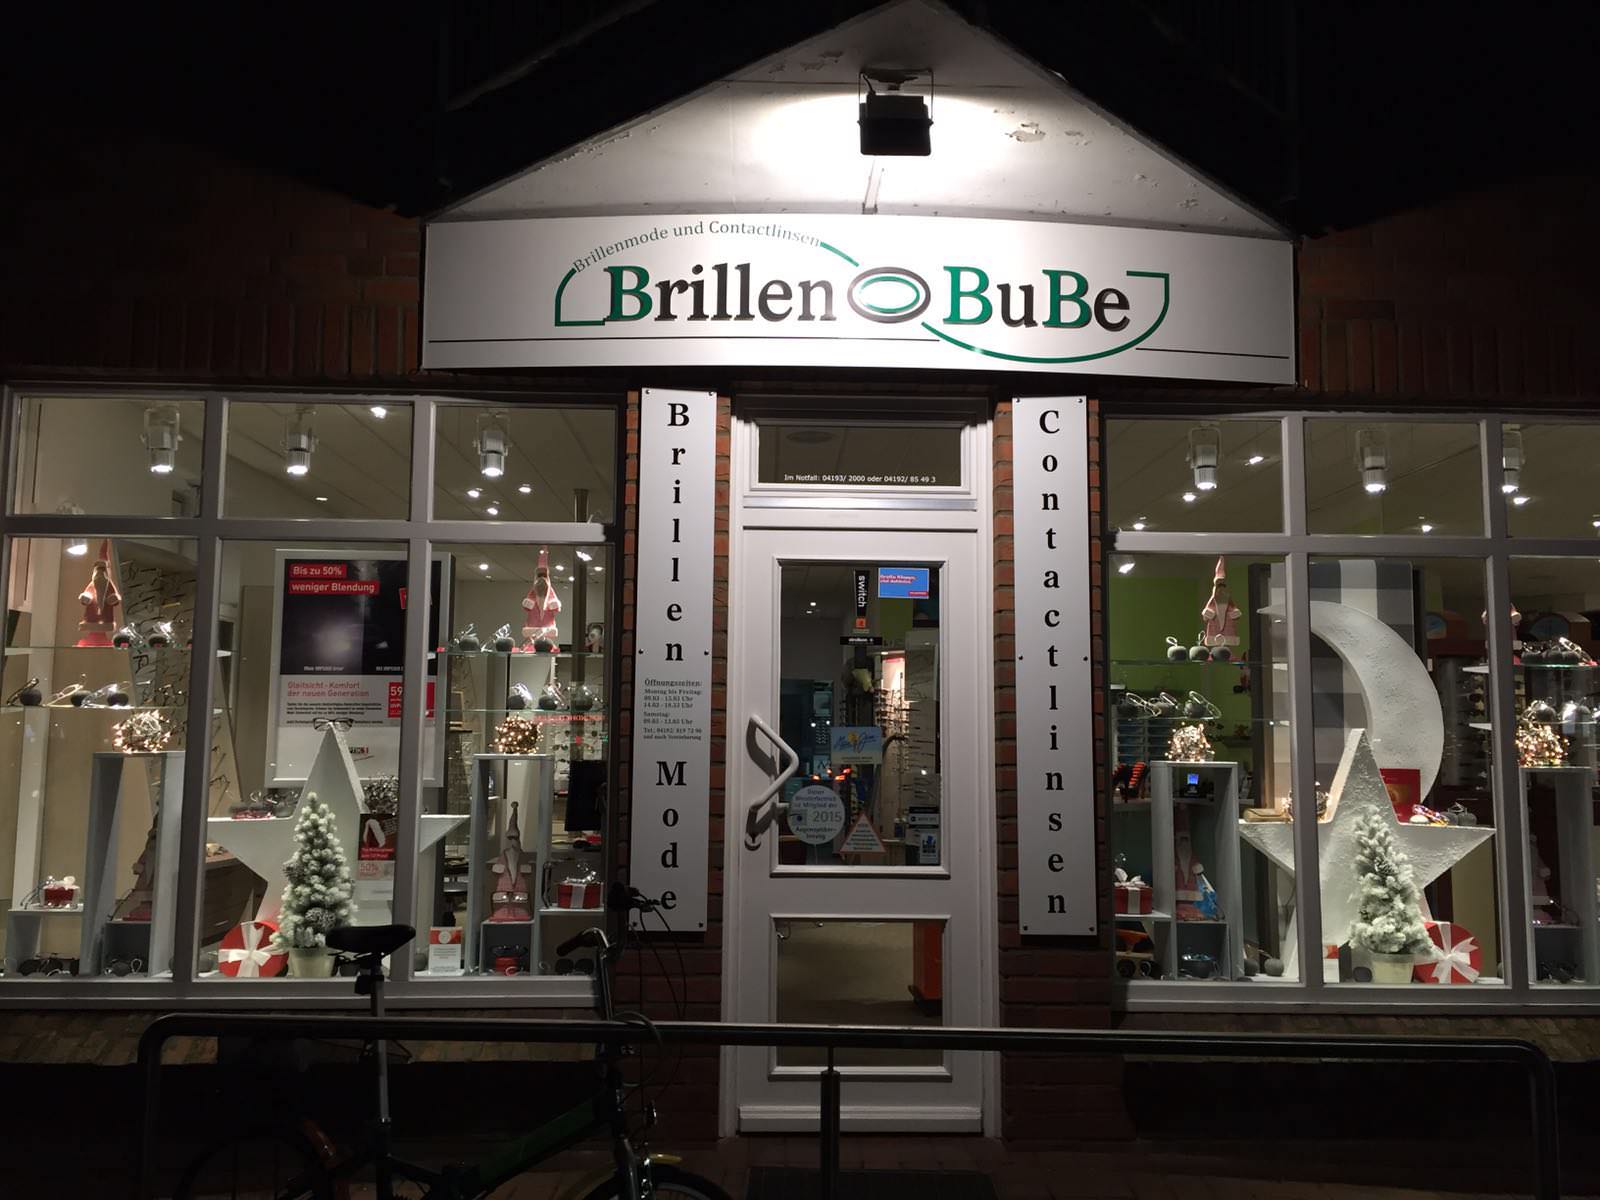 BrillenBube in Bad Bramstedt - Weihnachtsdekoration